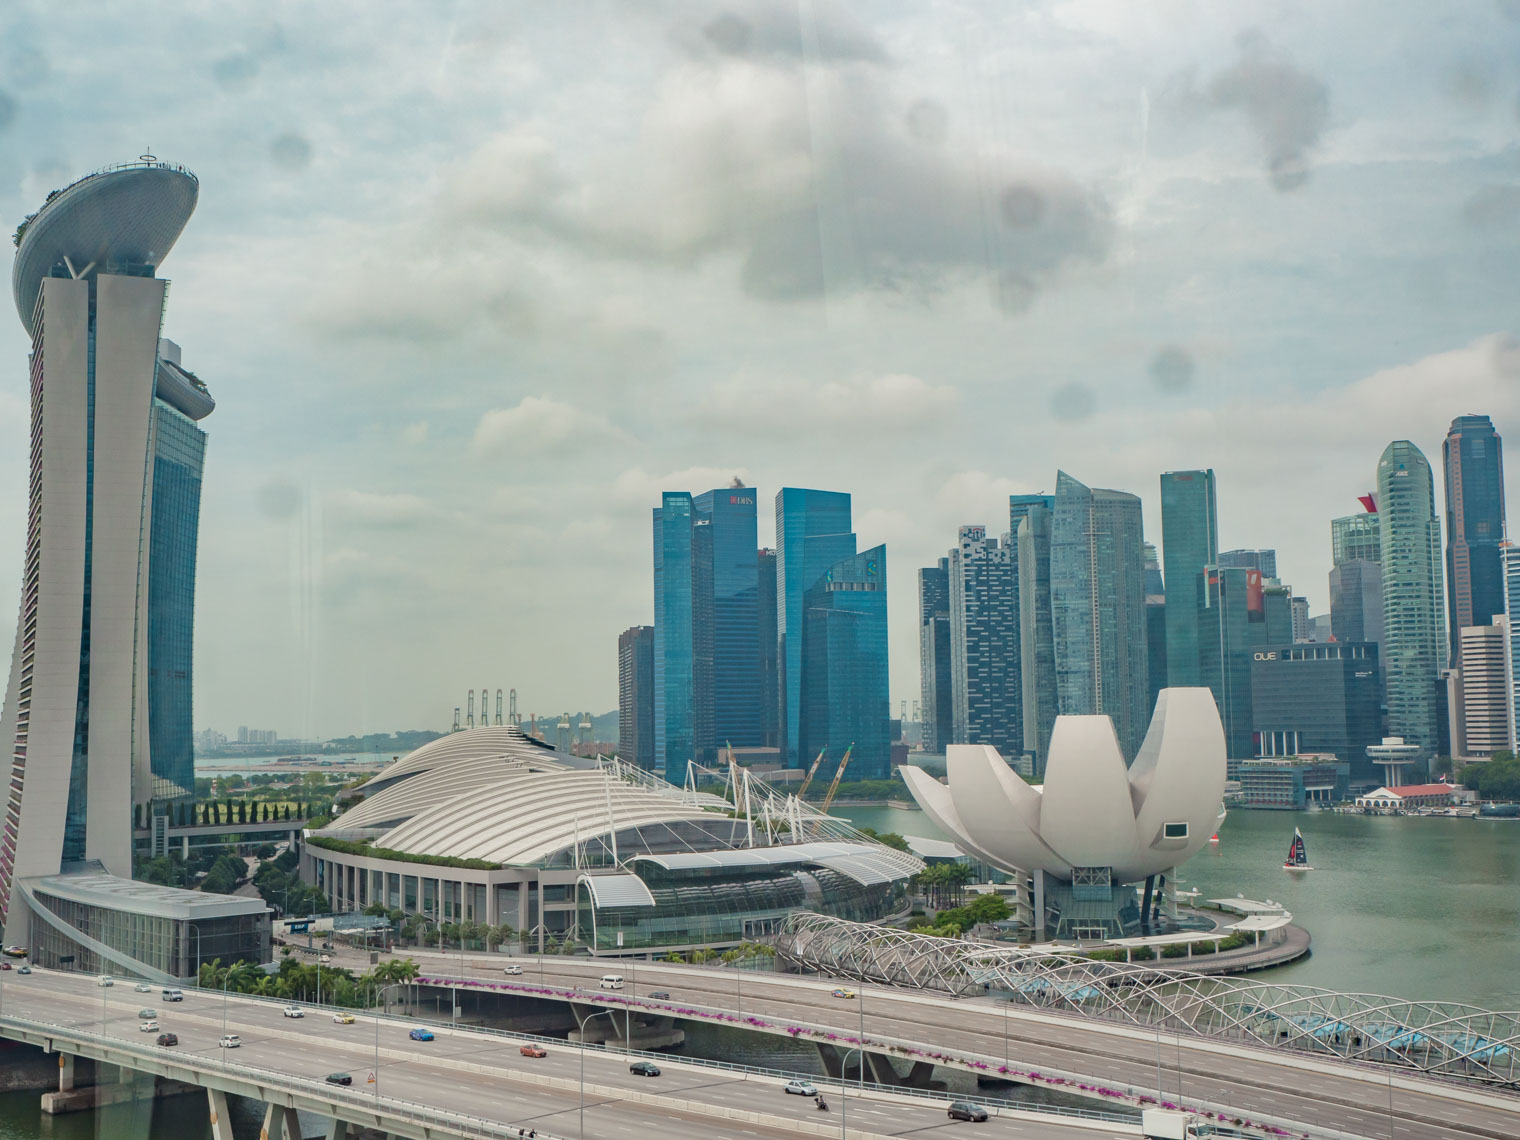 Singapore view at Marina Bay Sands